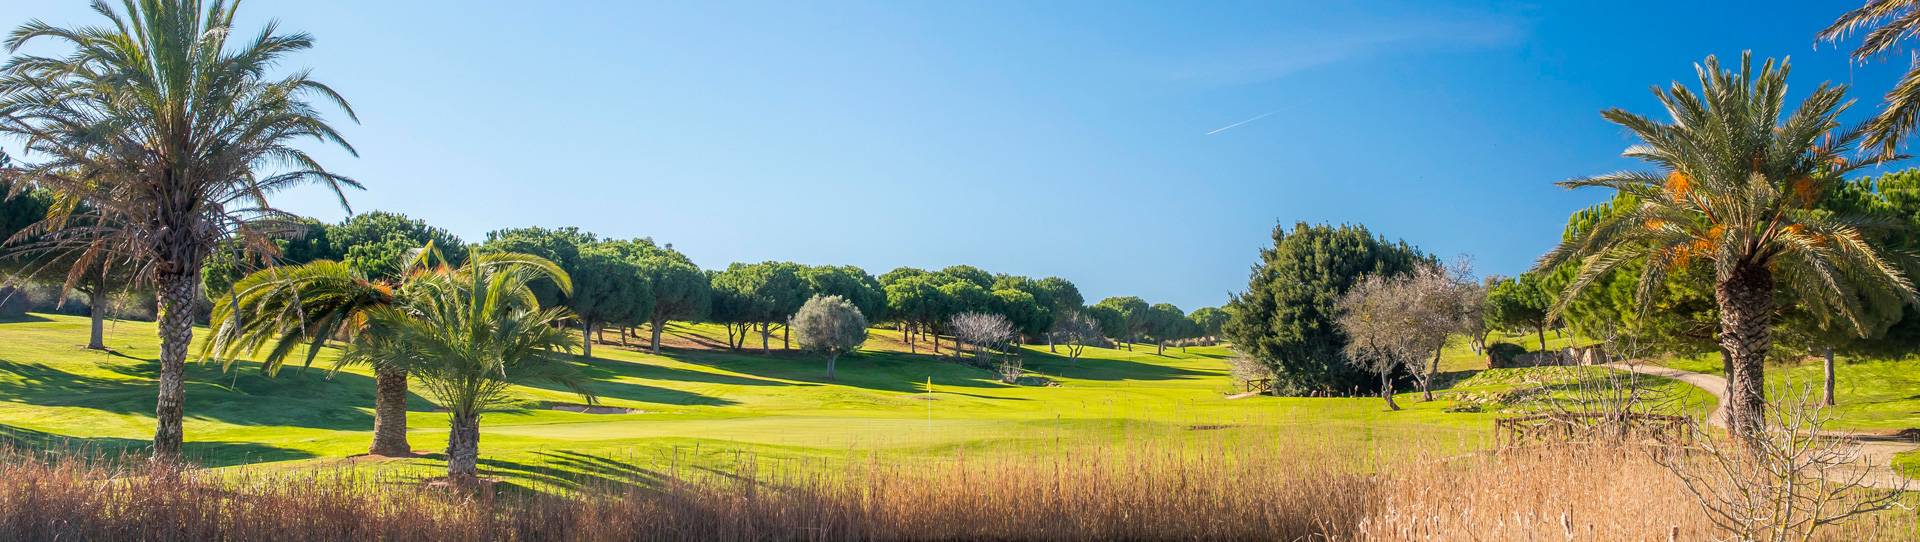 Portugal golf courses - Boavista Golf Course - Photo 3